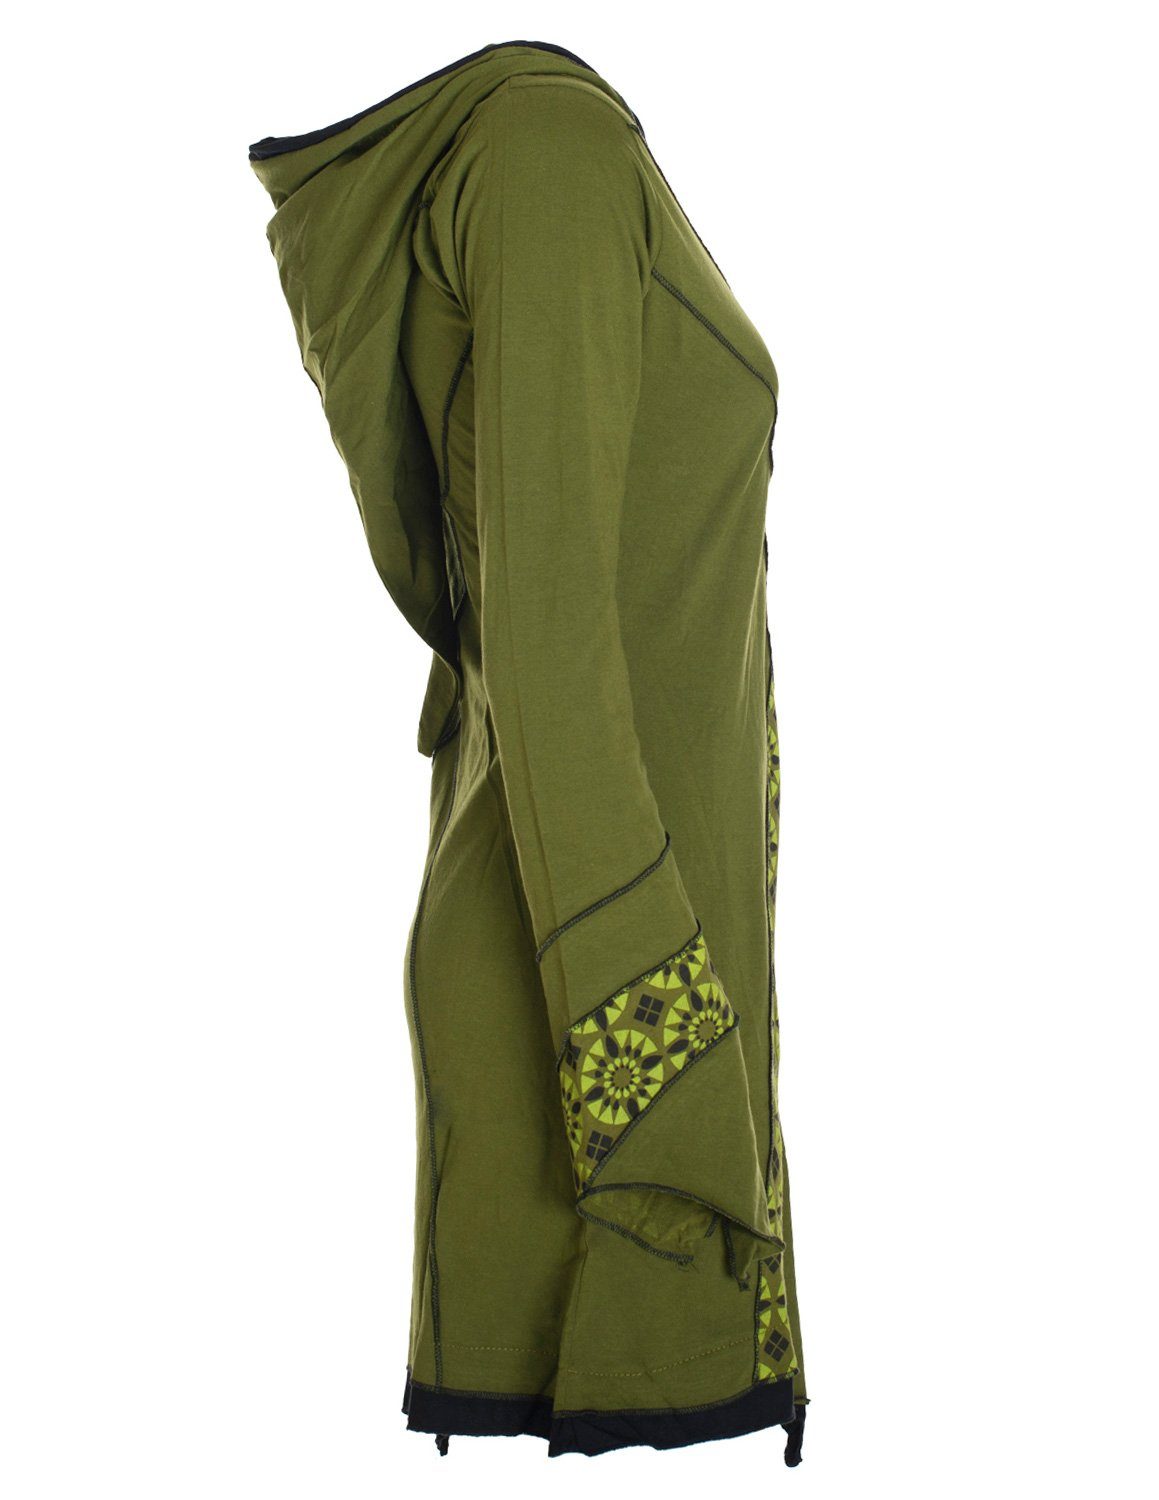 Vishes Zipfelkleid Langarm Damen Elfentunika Zipfelige Style Elfen Hippie, Goa olive Zipfelkleid Bedruckt Boho